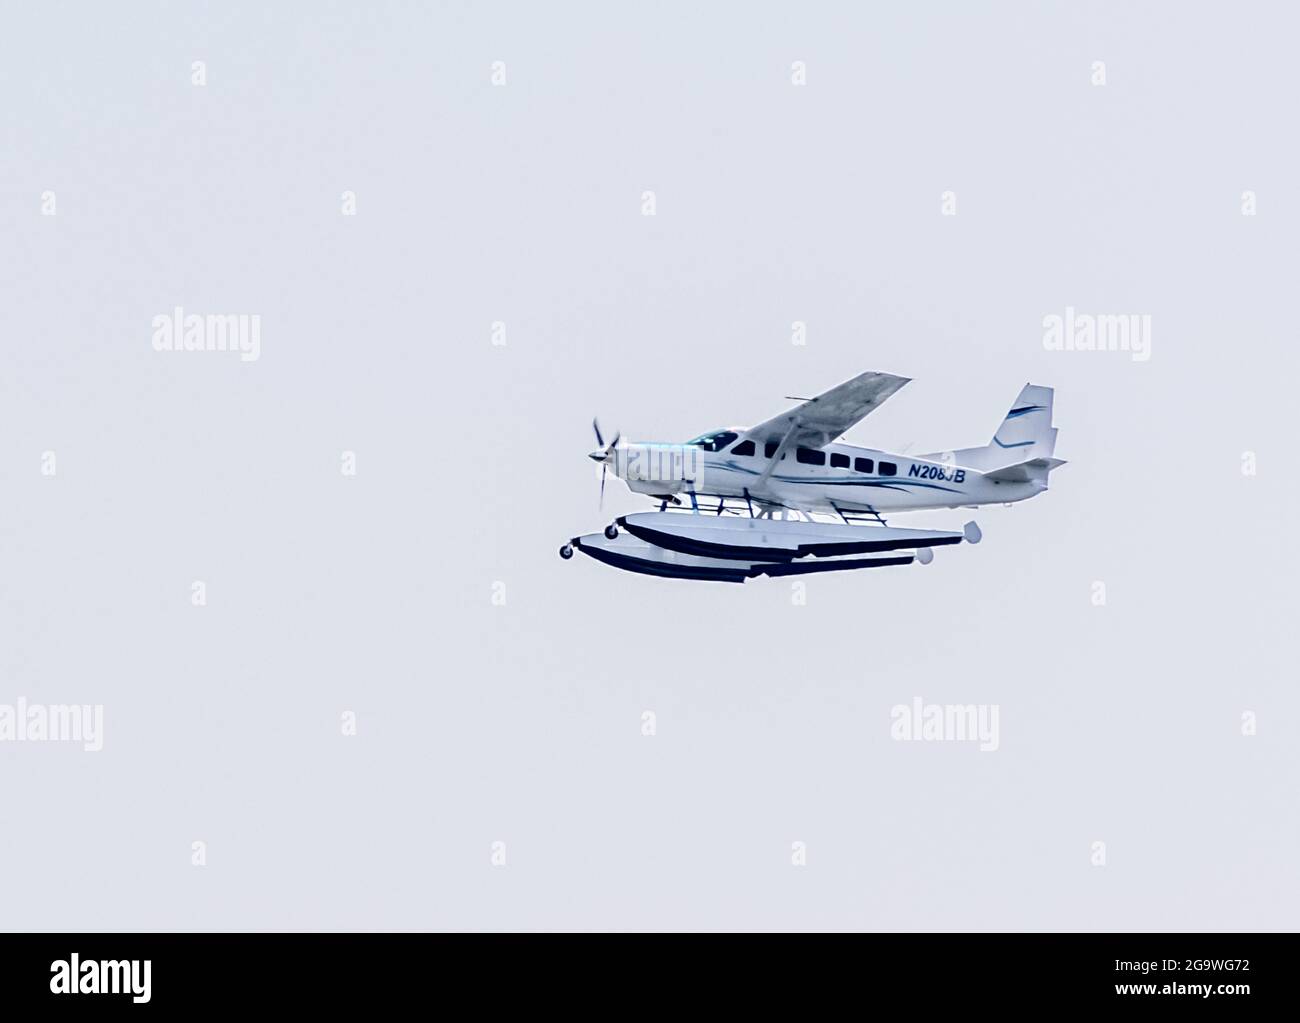 jimmy-buffetts-cessna-caravan-floatplane-n208jb-in-flight-2G9WG72.jpg